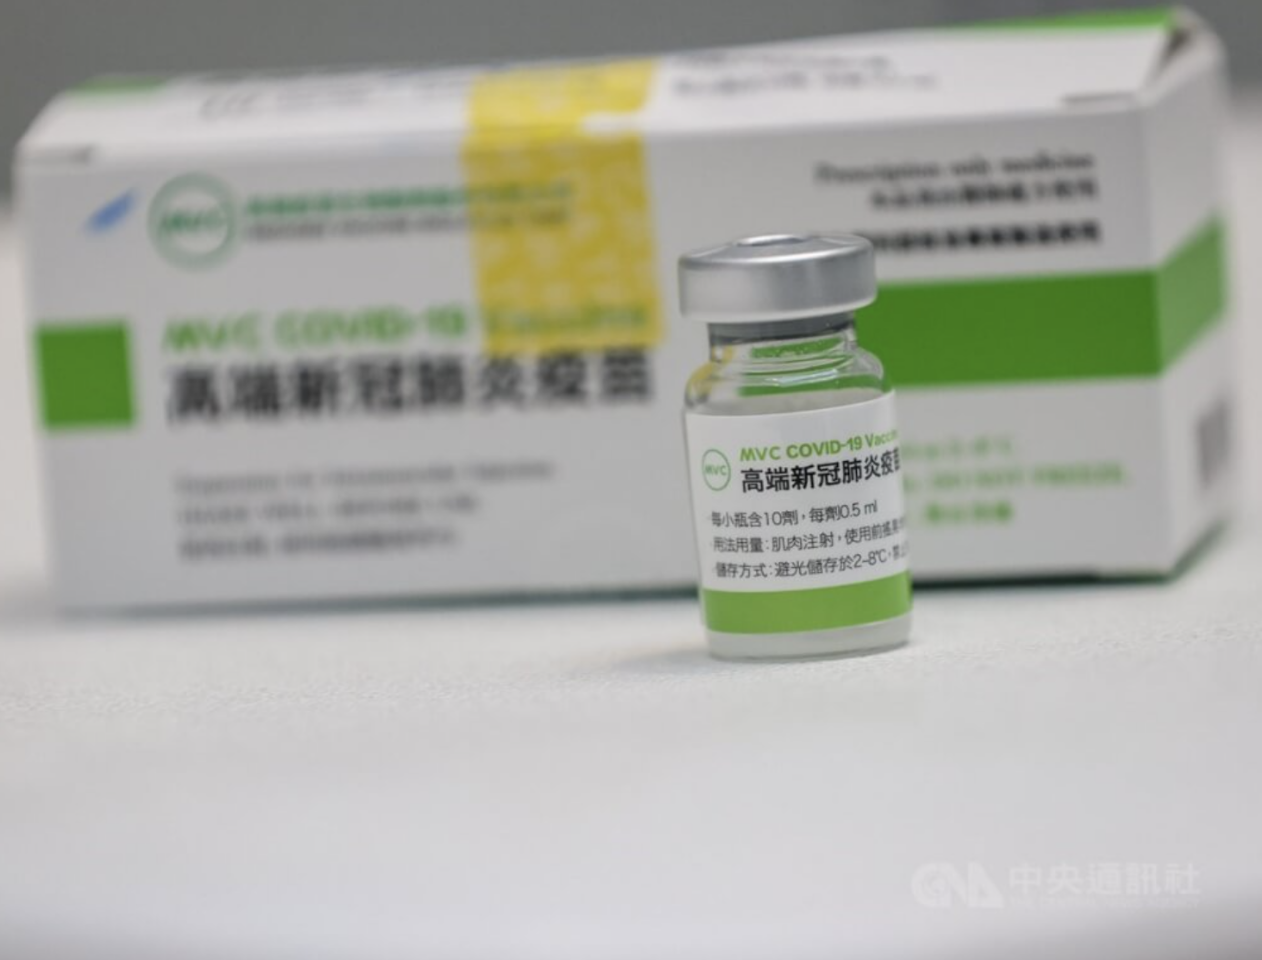 Warga Berangkat ke Jepang, Medigen Beri Layanan Pemeriksaan PCR di 26 RS Rujukan